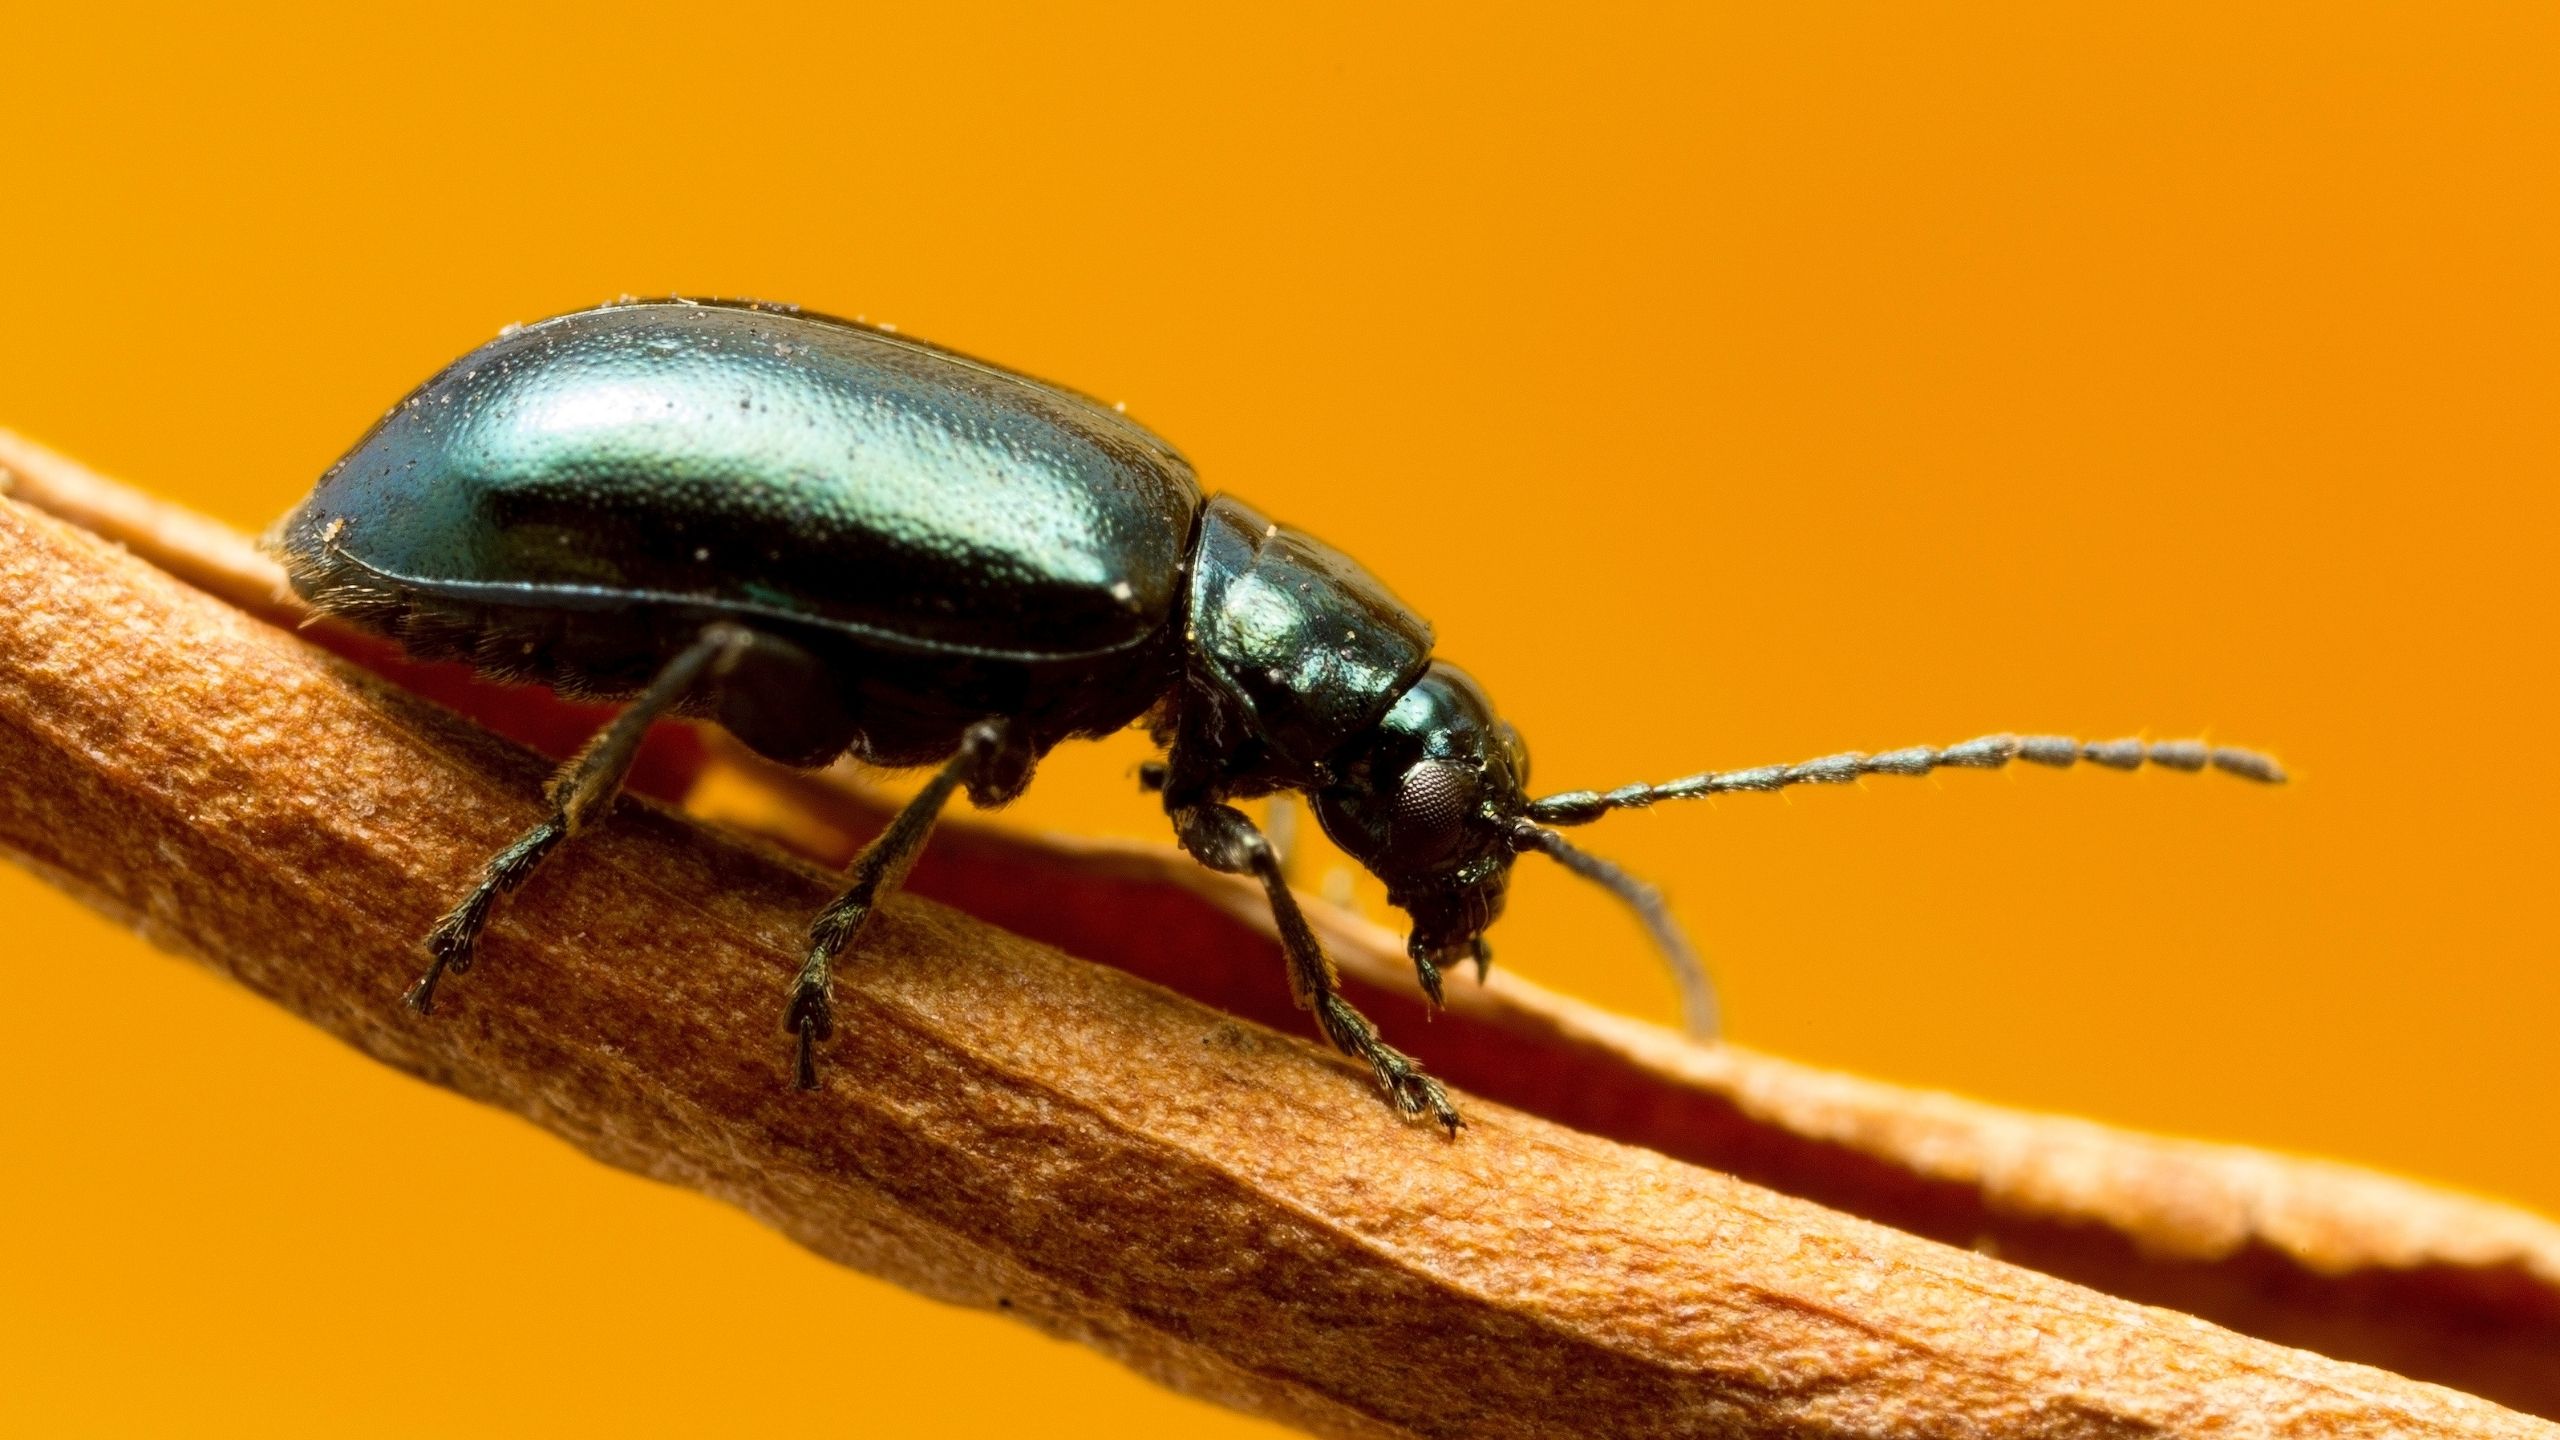 flea beetle leg